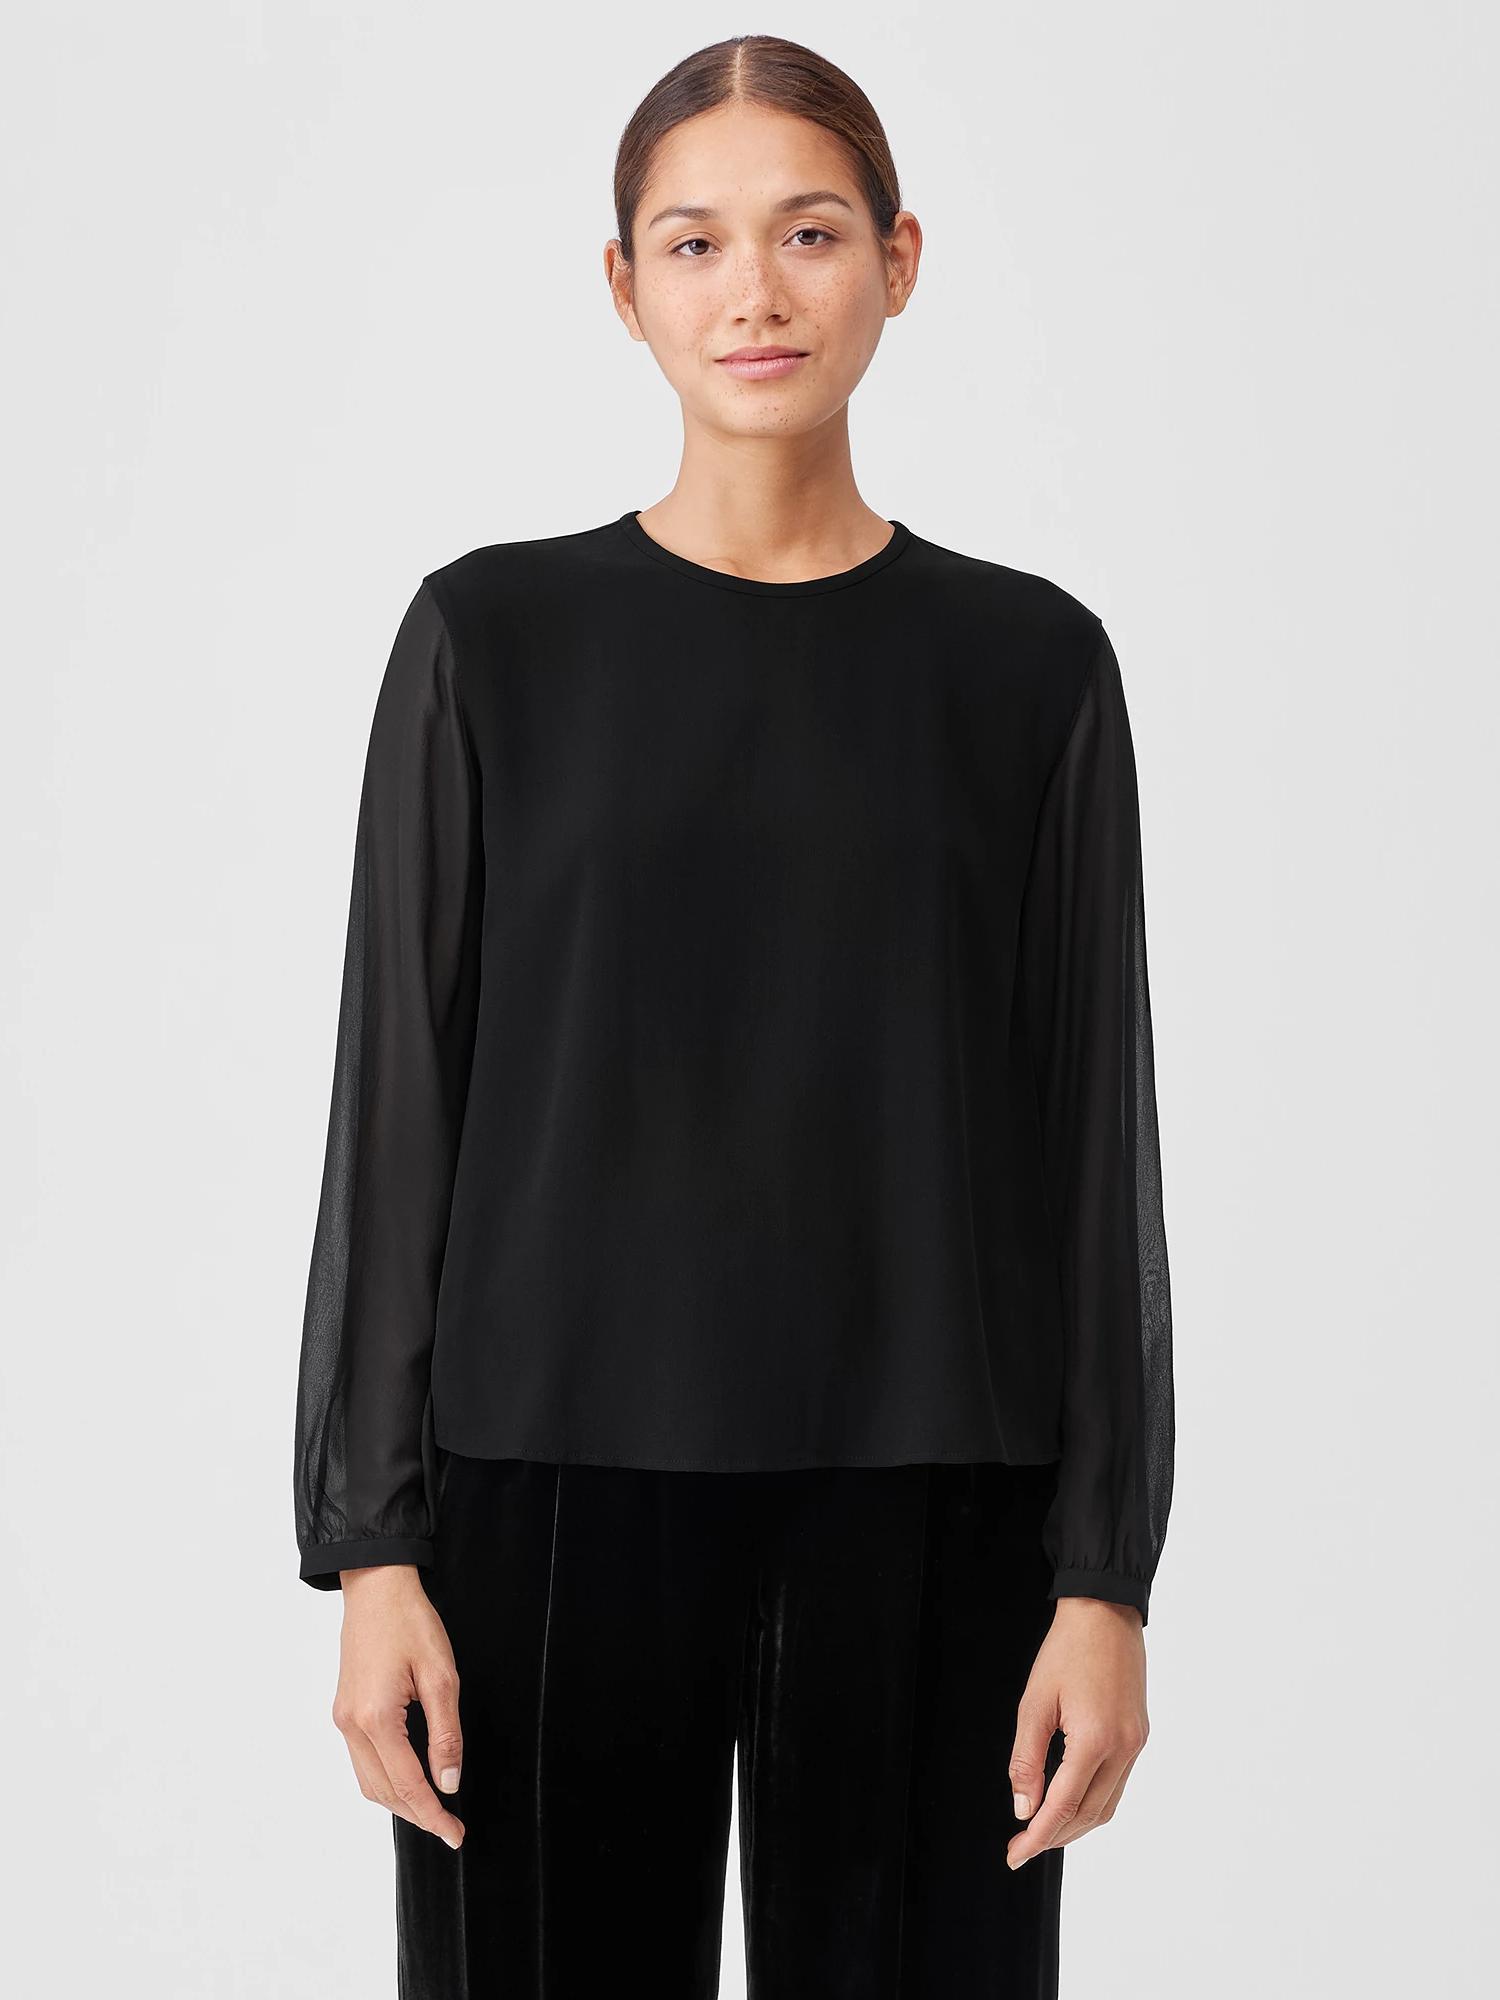 Eileen Fisher Silk Georgette Crepe Top With Sheer Sleeves in Black | Lyst